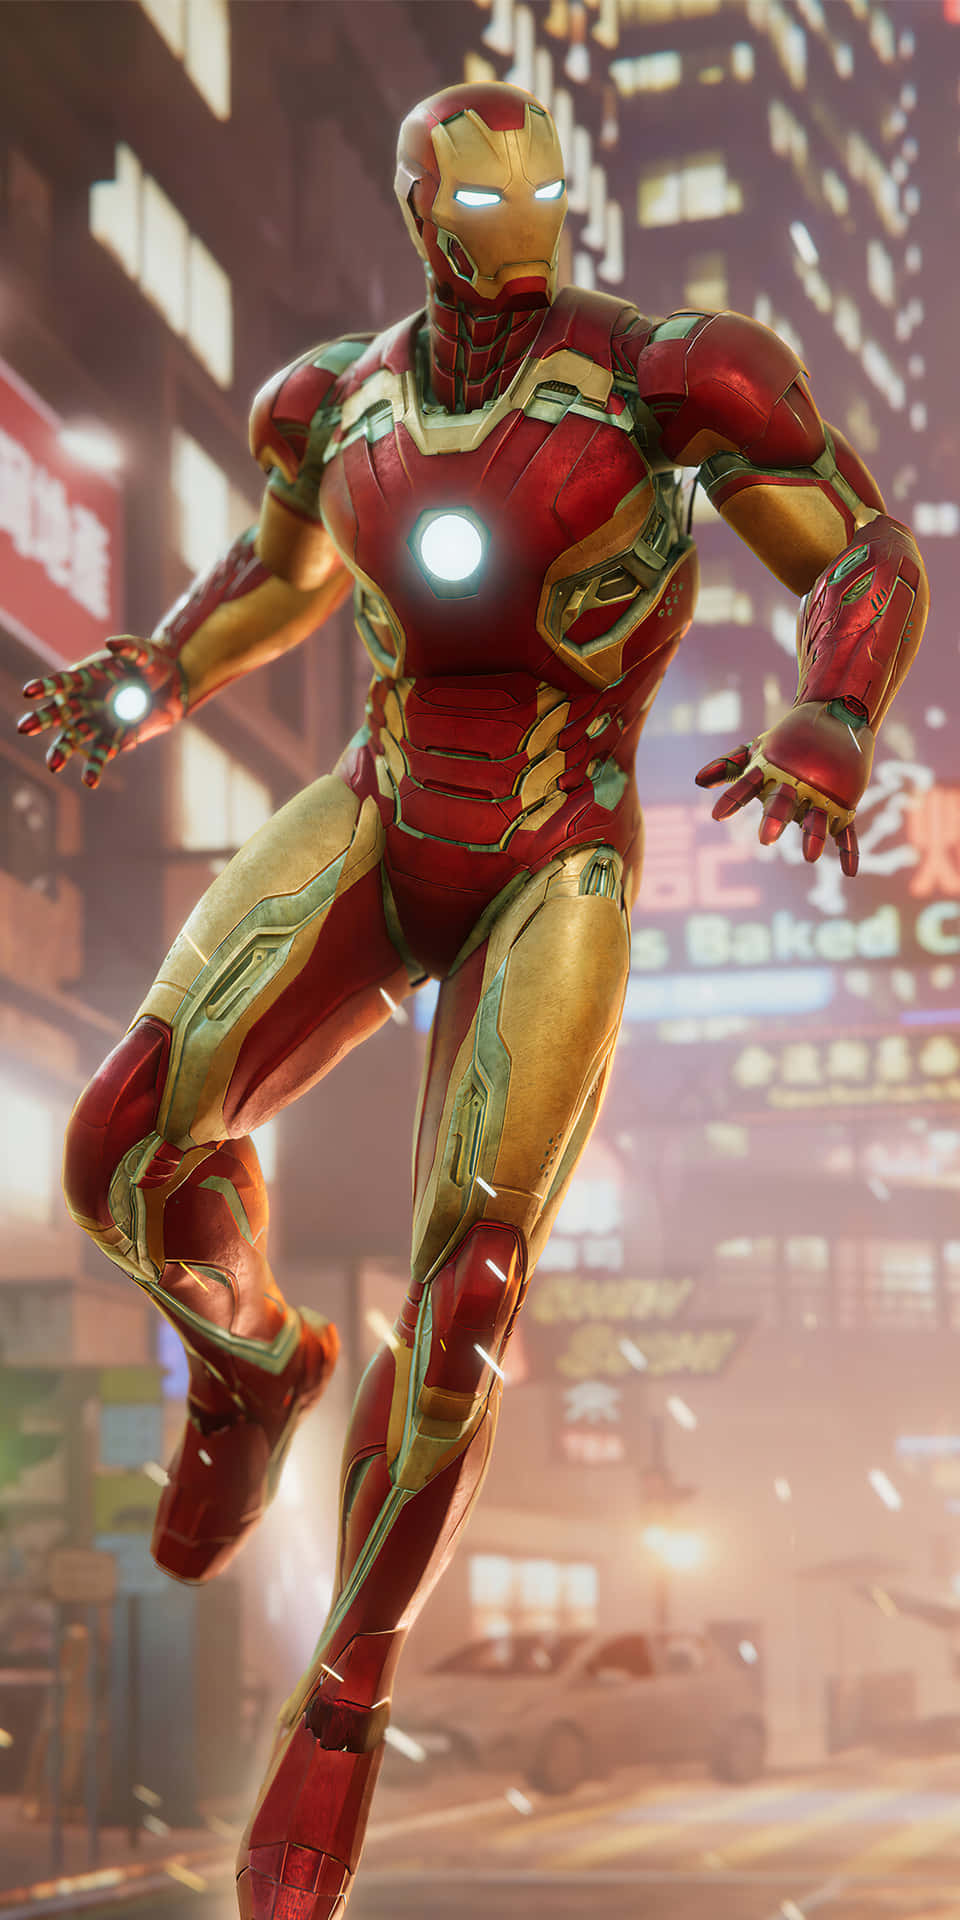 Pixel3 Hintergrund Des Iron Man Ar-spiels